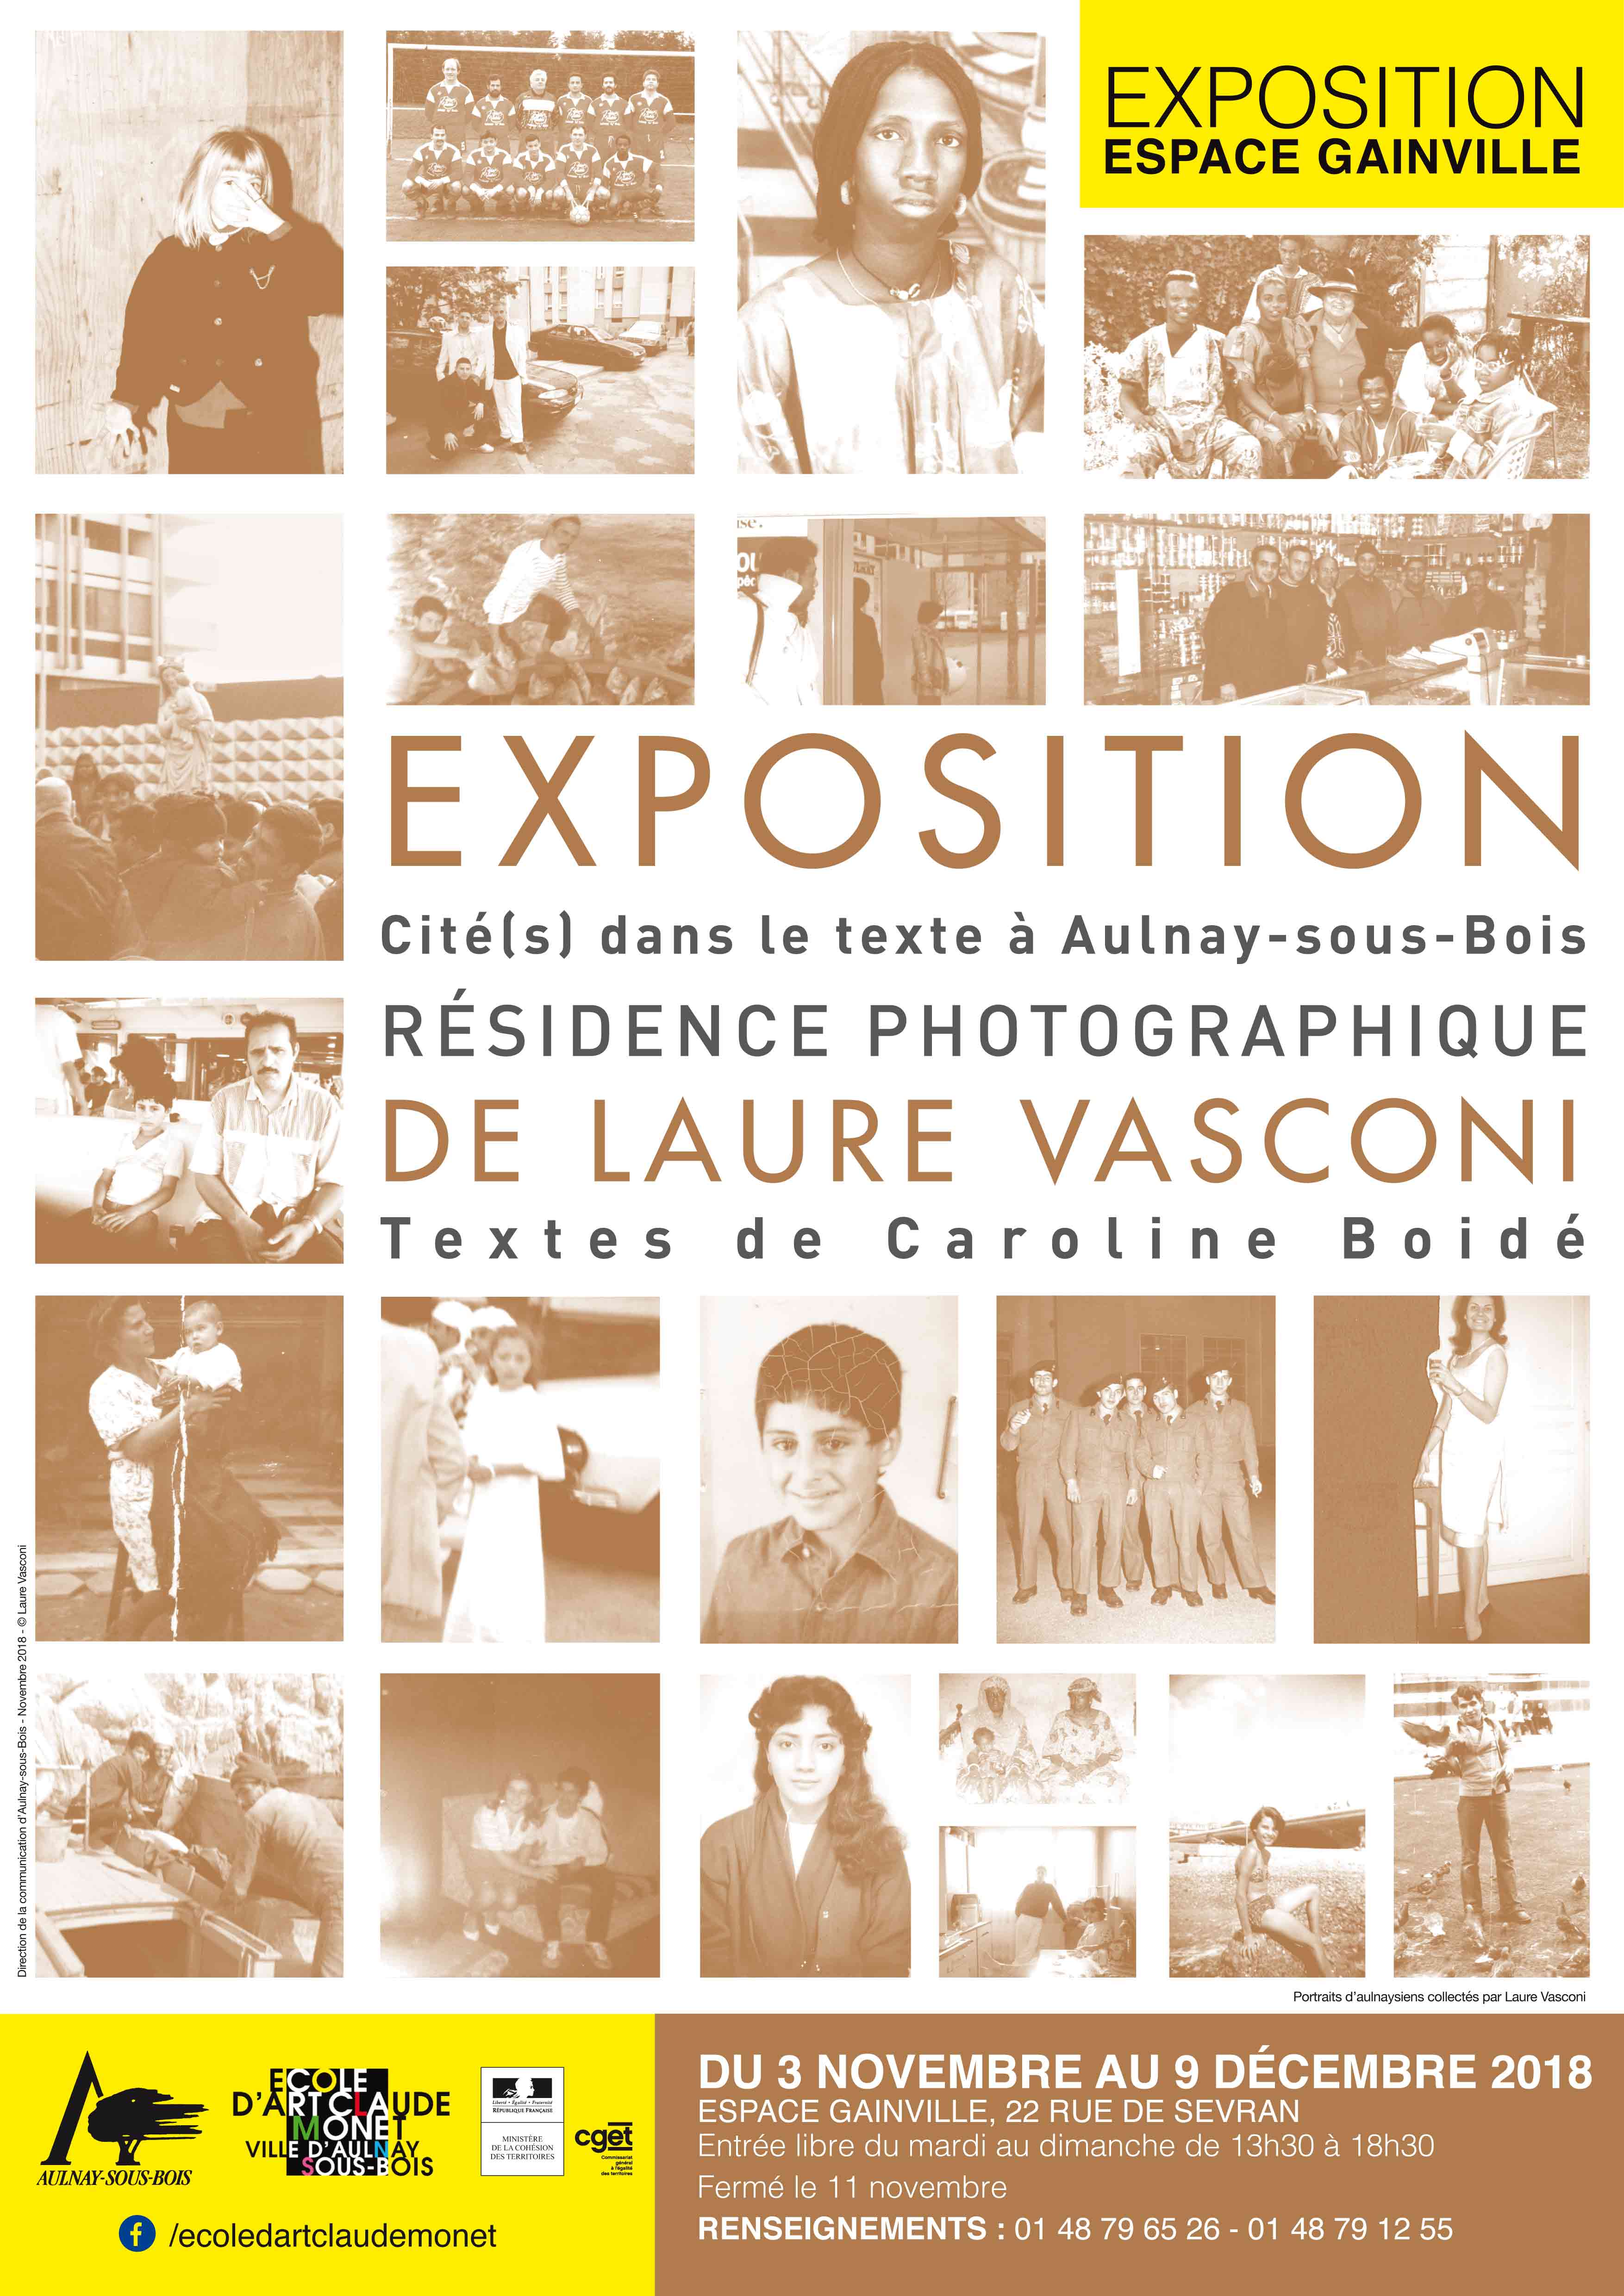 Affiche de l'exposition Laure Vasconi présentant des photos anciennes en SEPIA